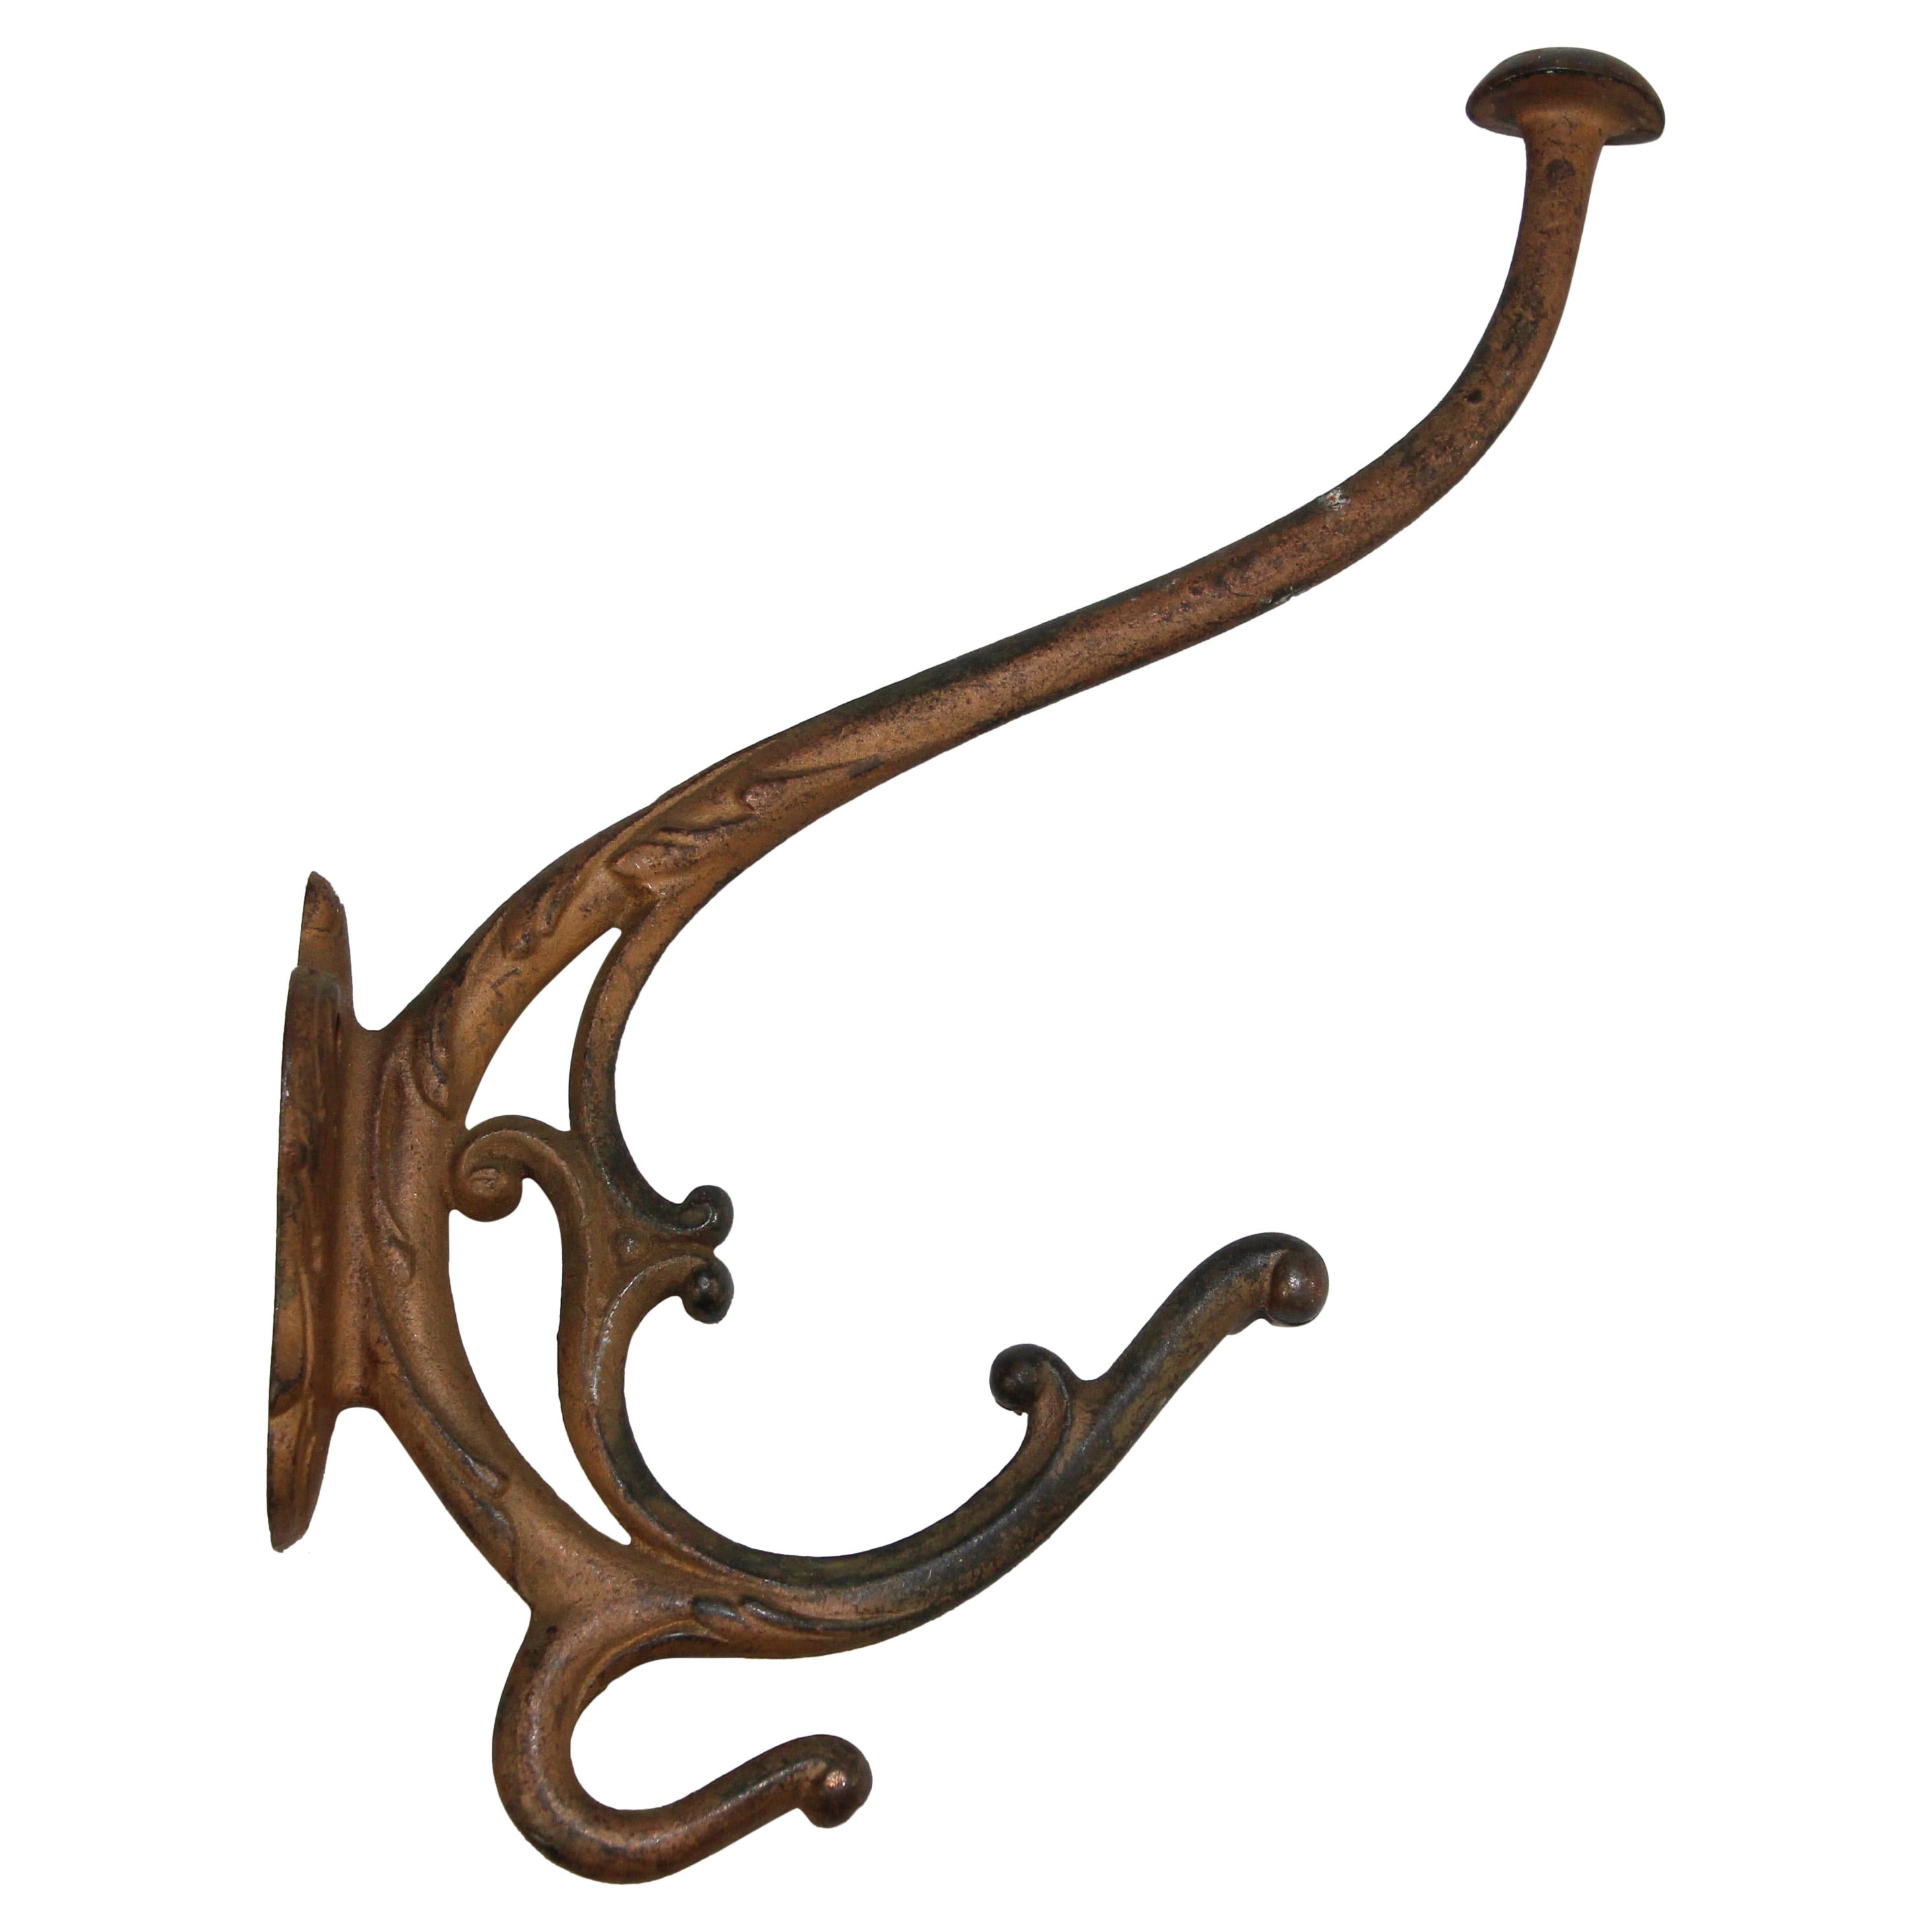 Elegant French Art Nouveau Style Cast Iron Coat Hook.